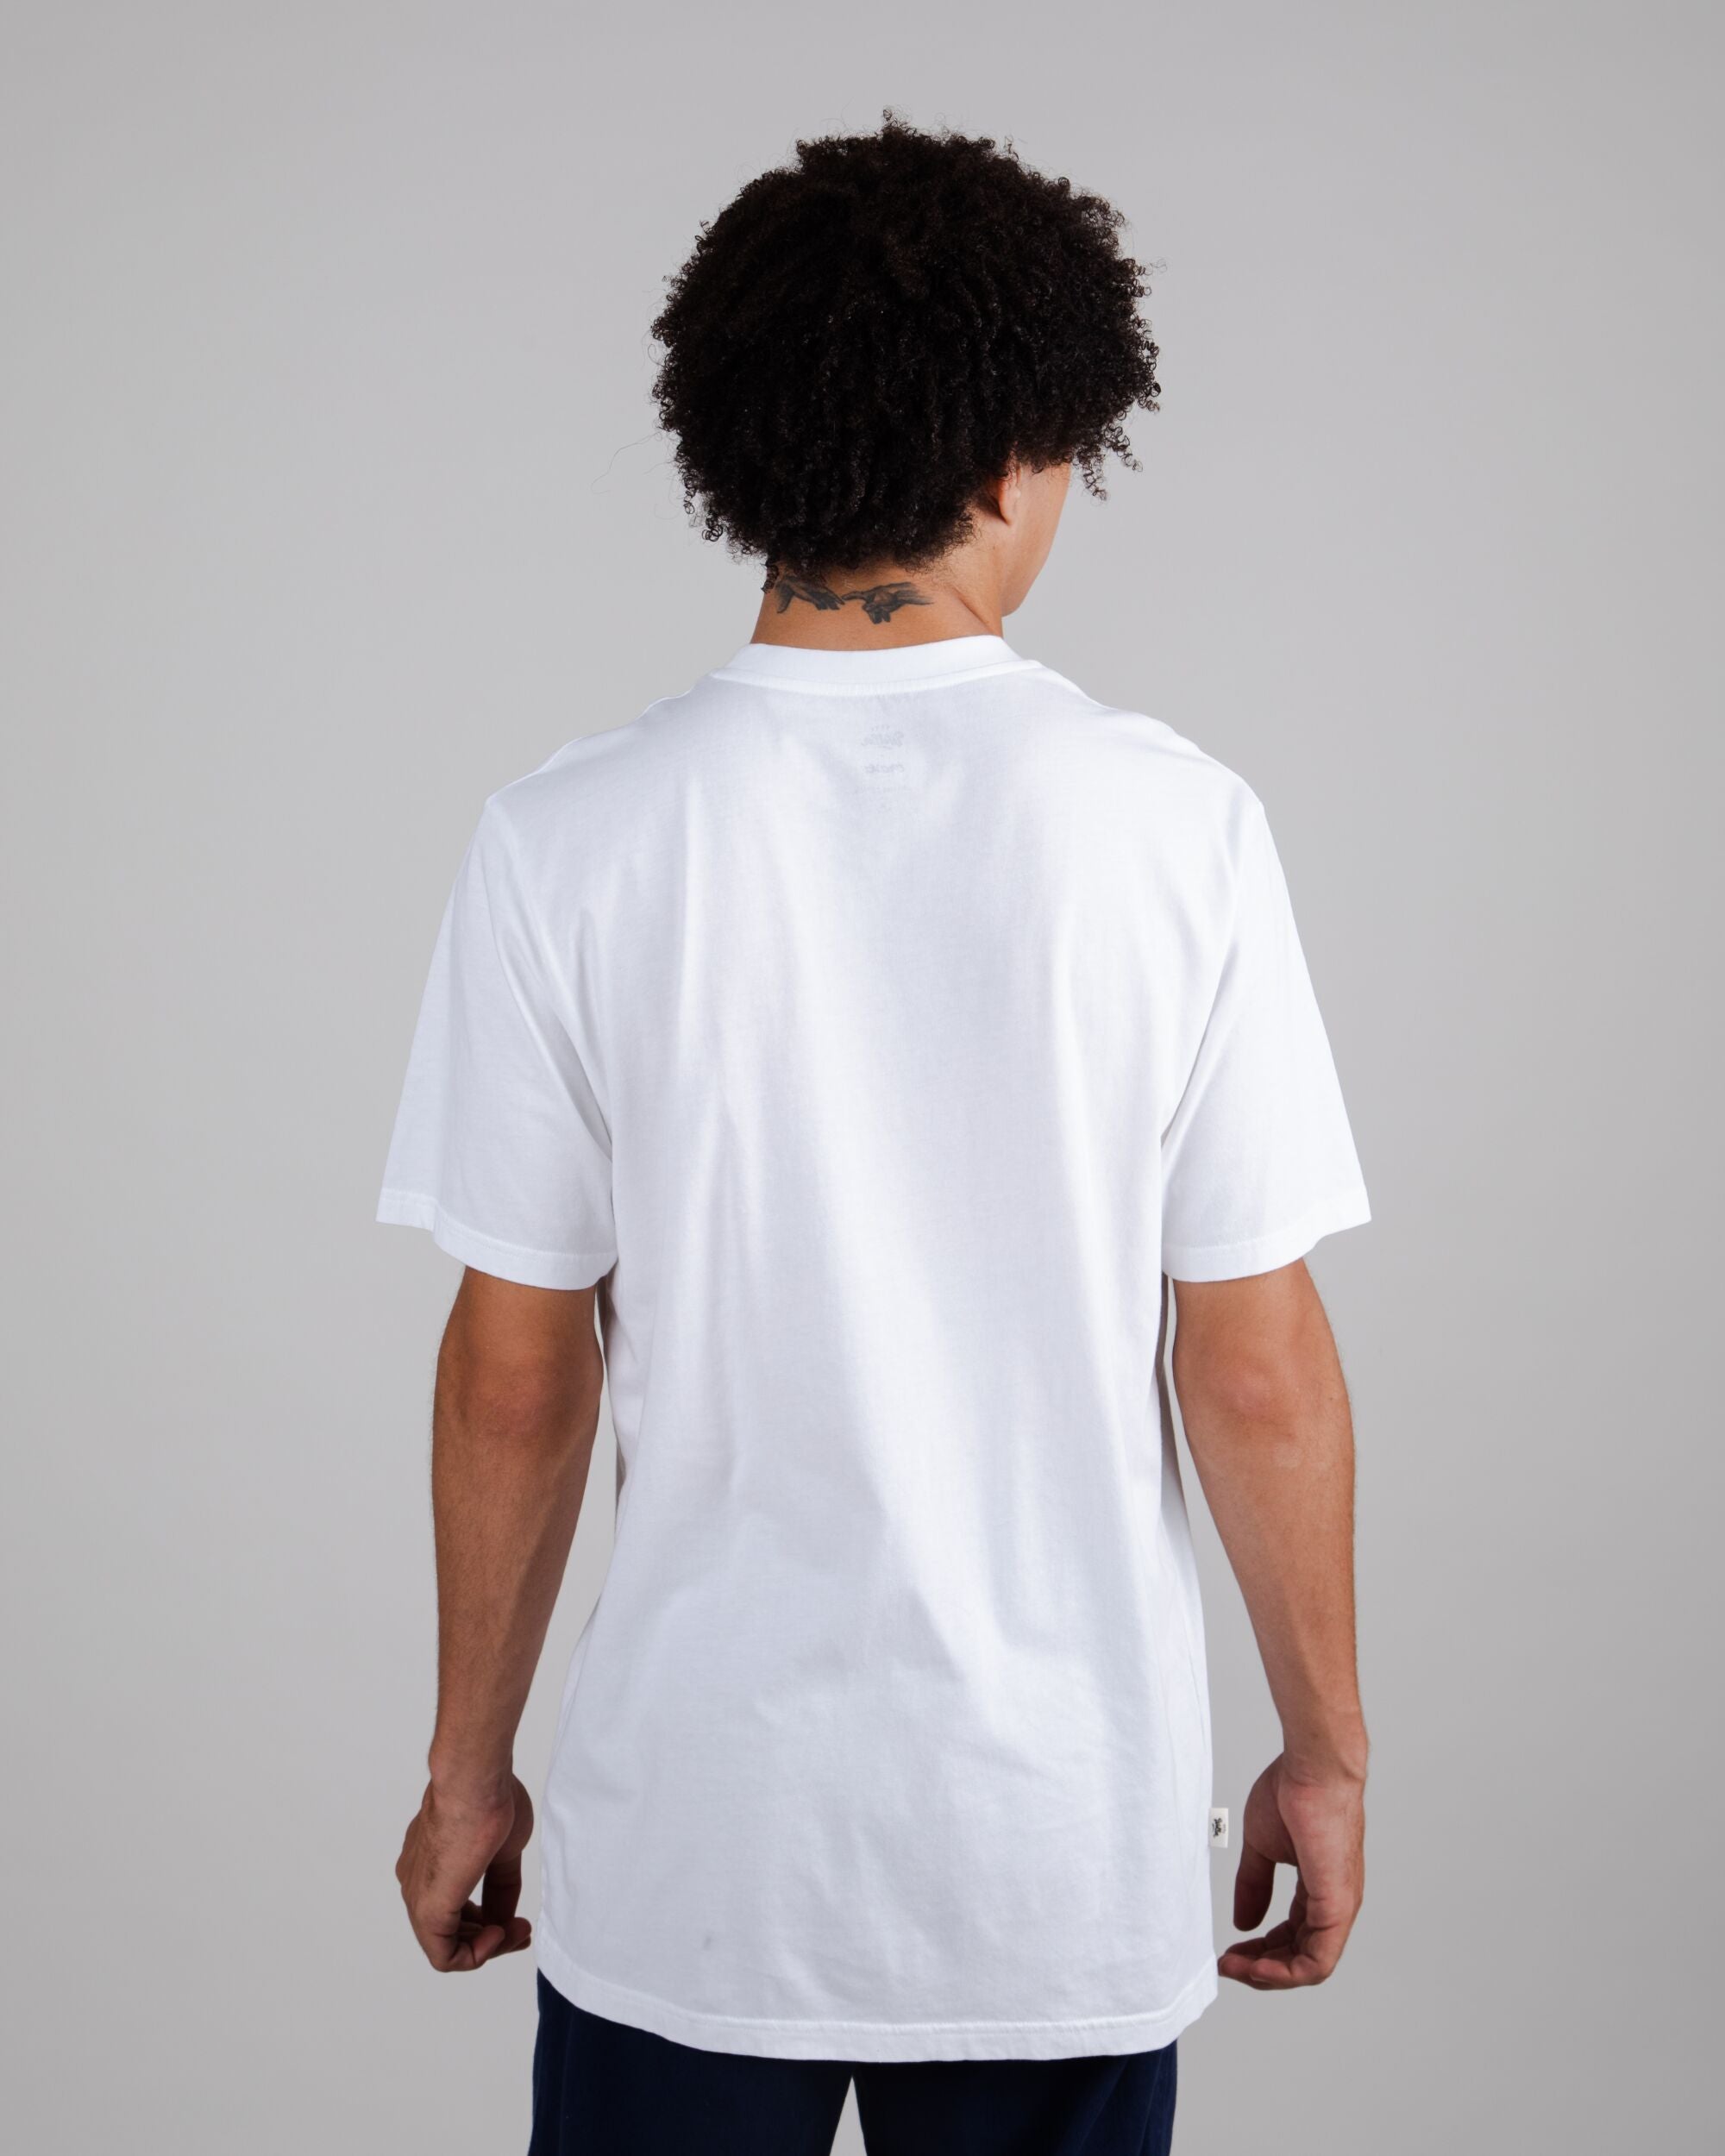 White shirt Yeye Weller Alligator made of organic cotton by Brava Fabrics